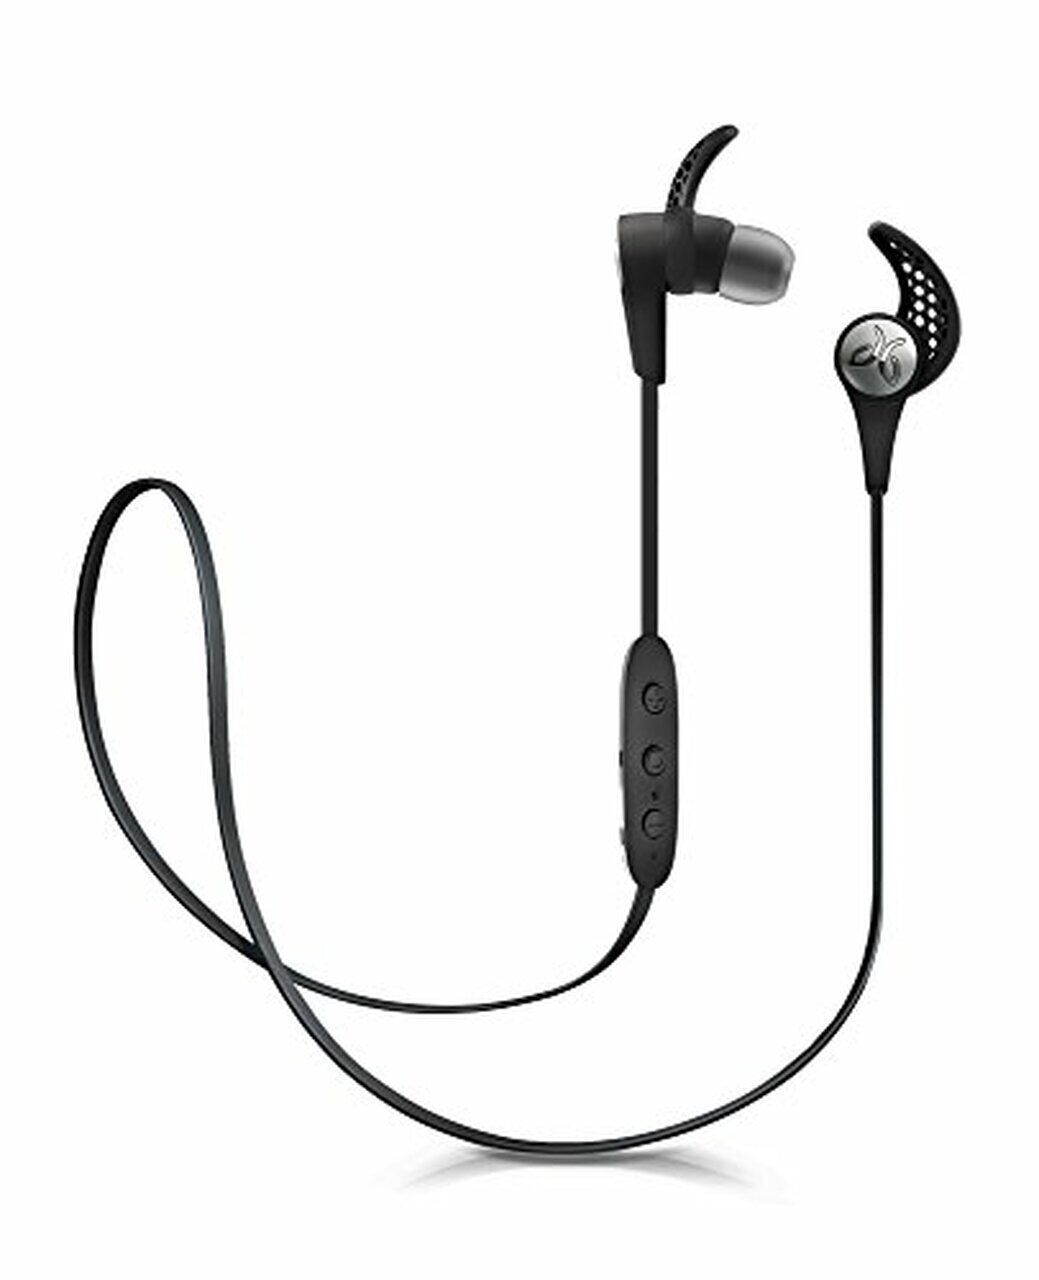 Jaybird X3 In-Ear Wireless Bluetooth Sports Headphone - Blackout LN